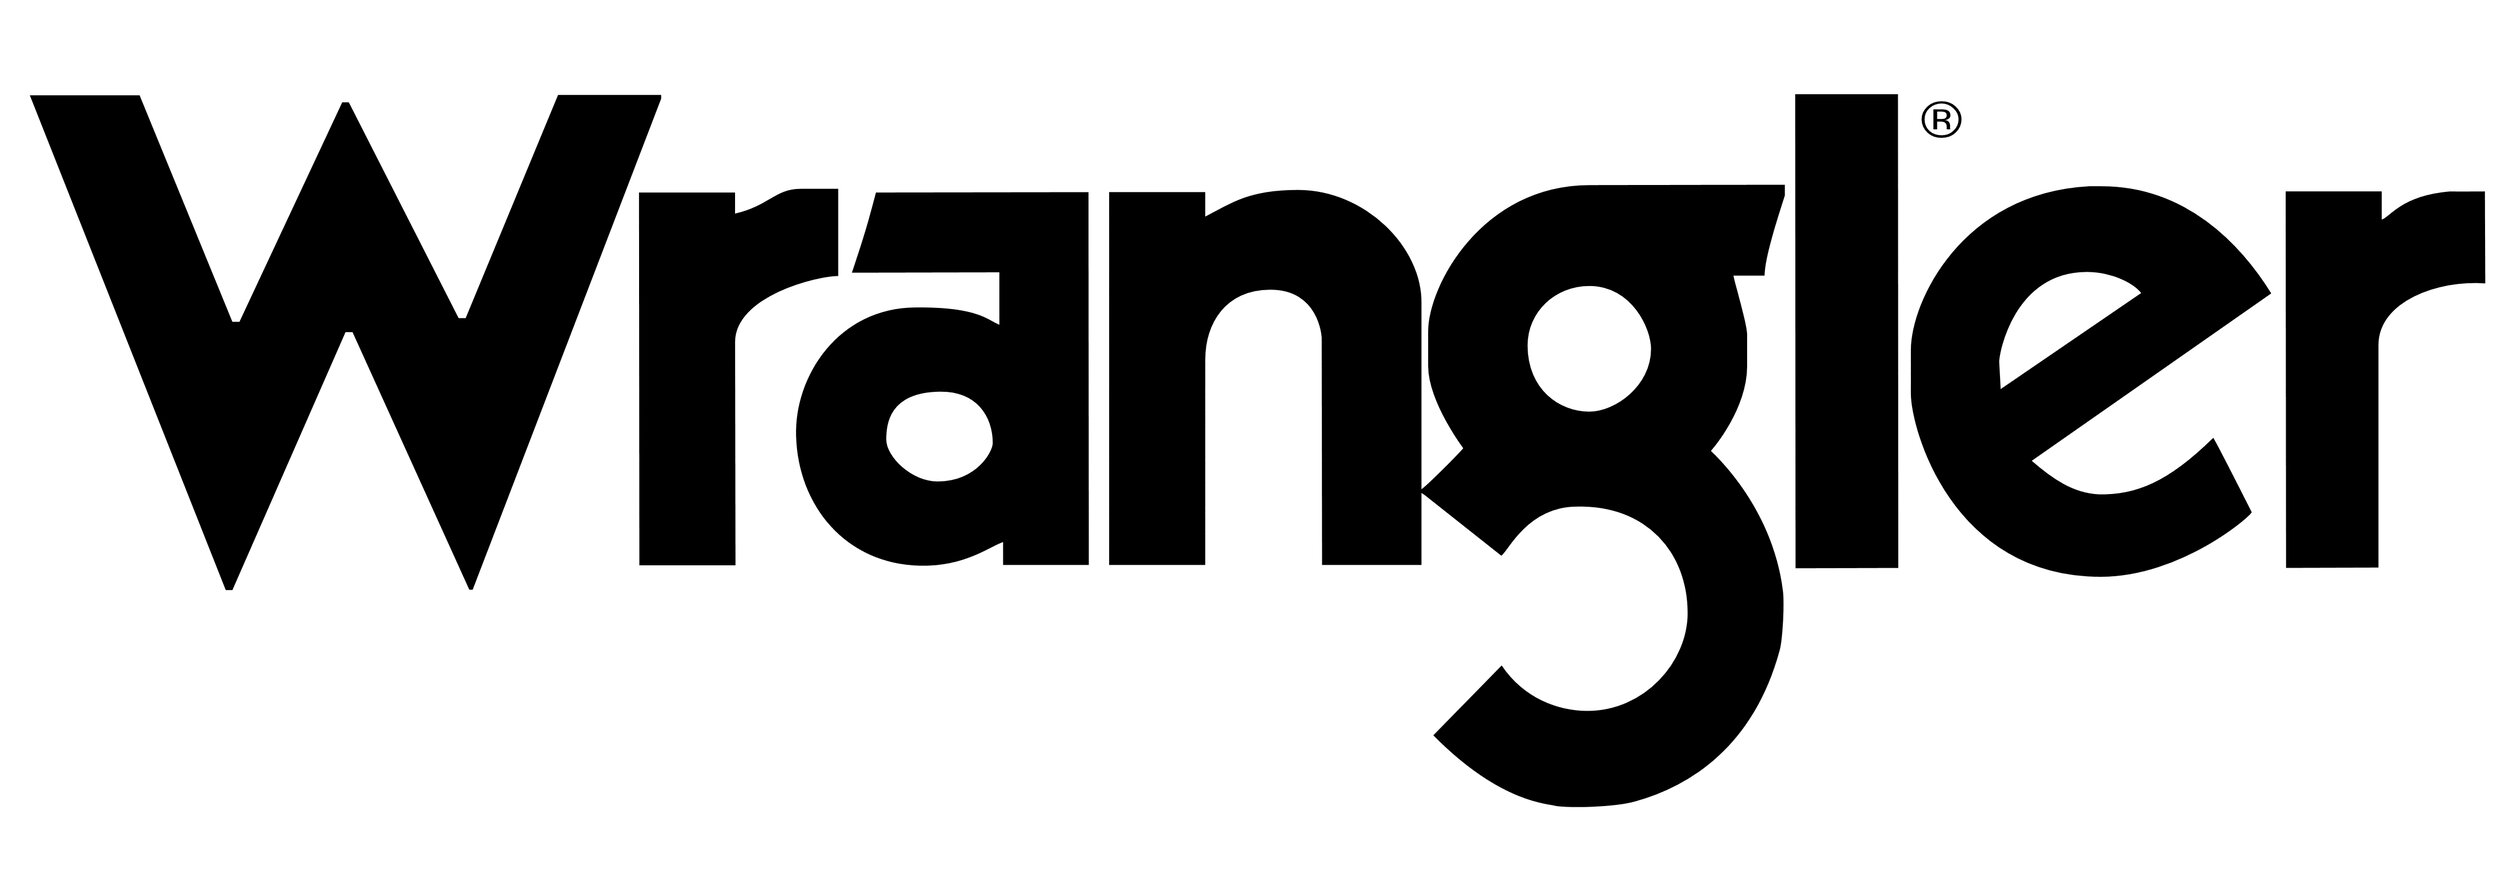 Wrangler_logo_logotype.jpg